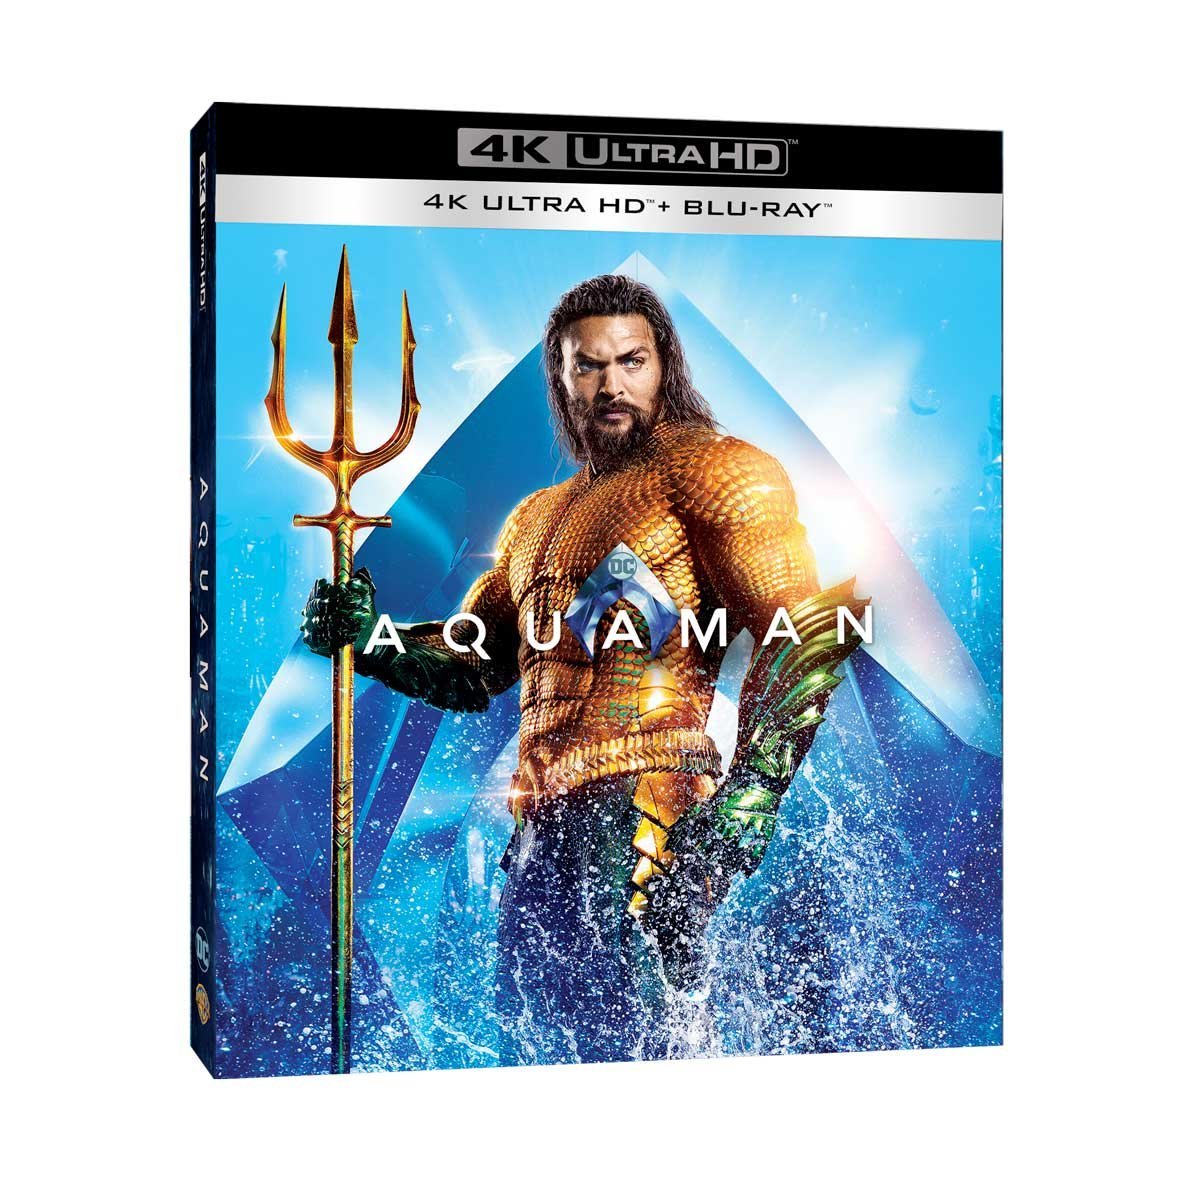 4K Uhd + Blu Ray  Aquaman